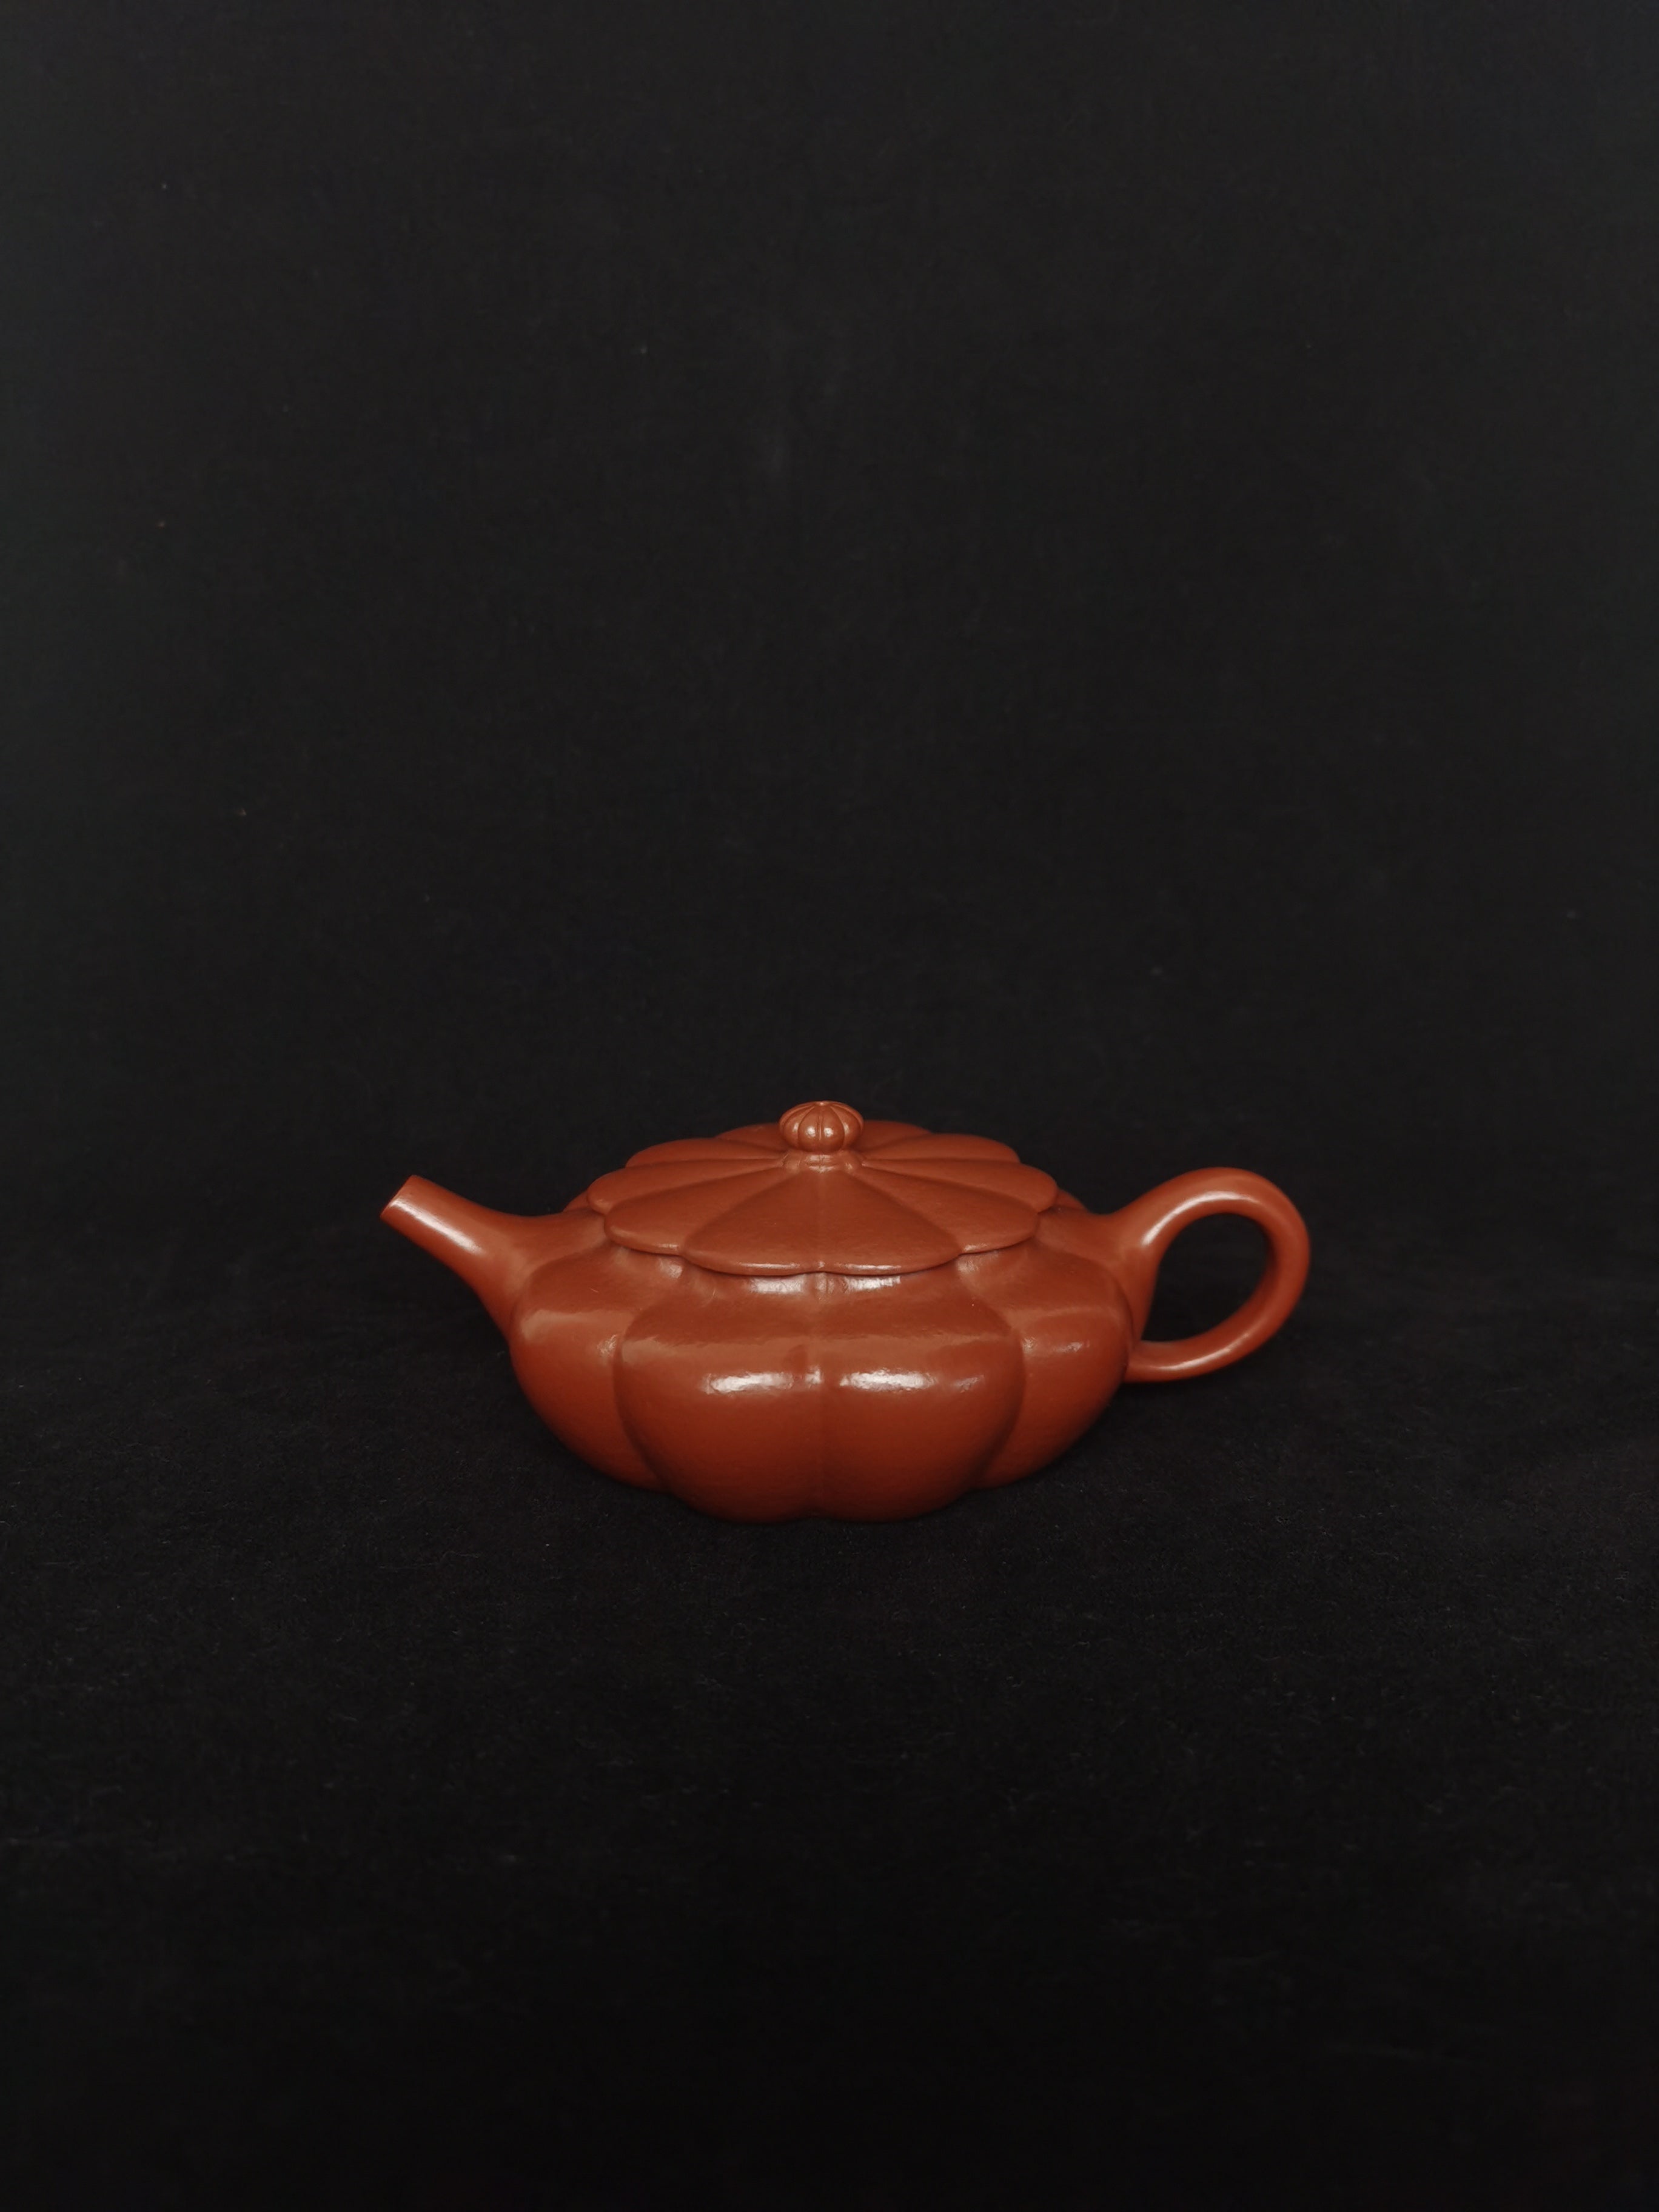 yixing teapot gongfucha teaware